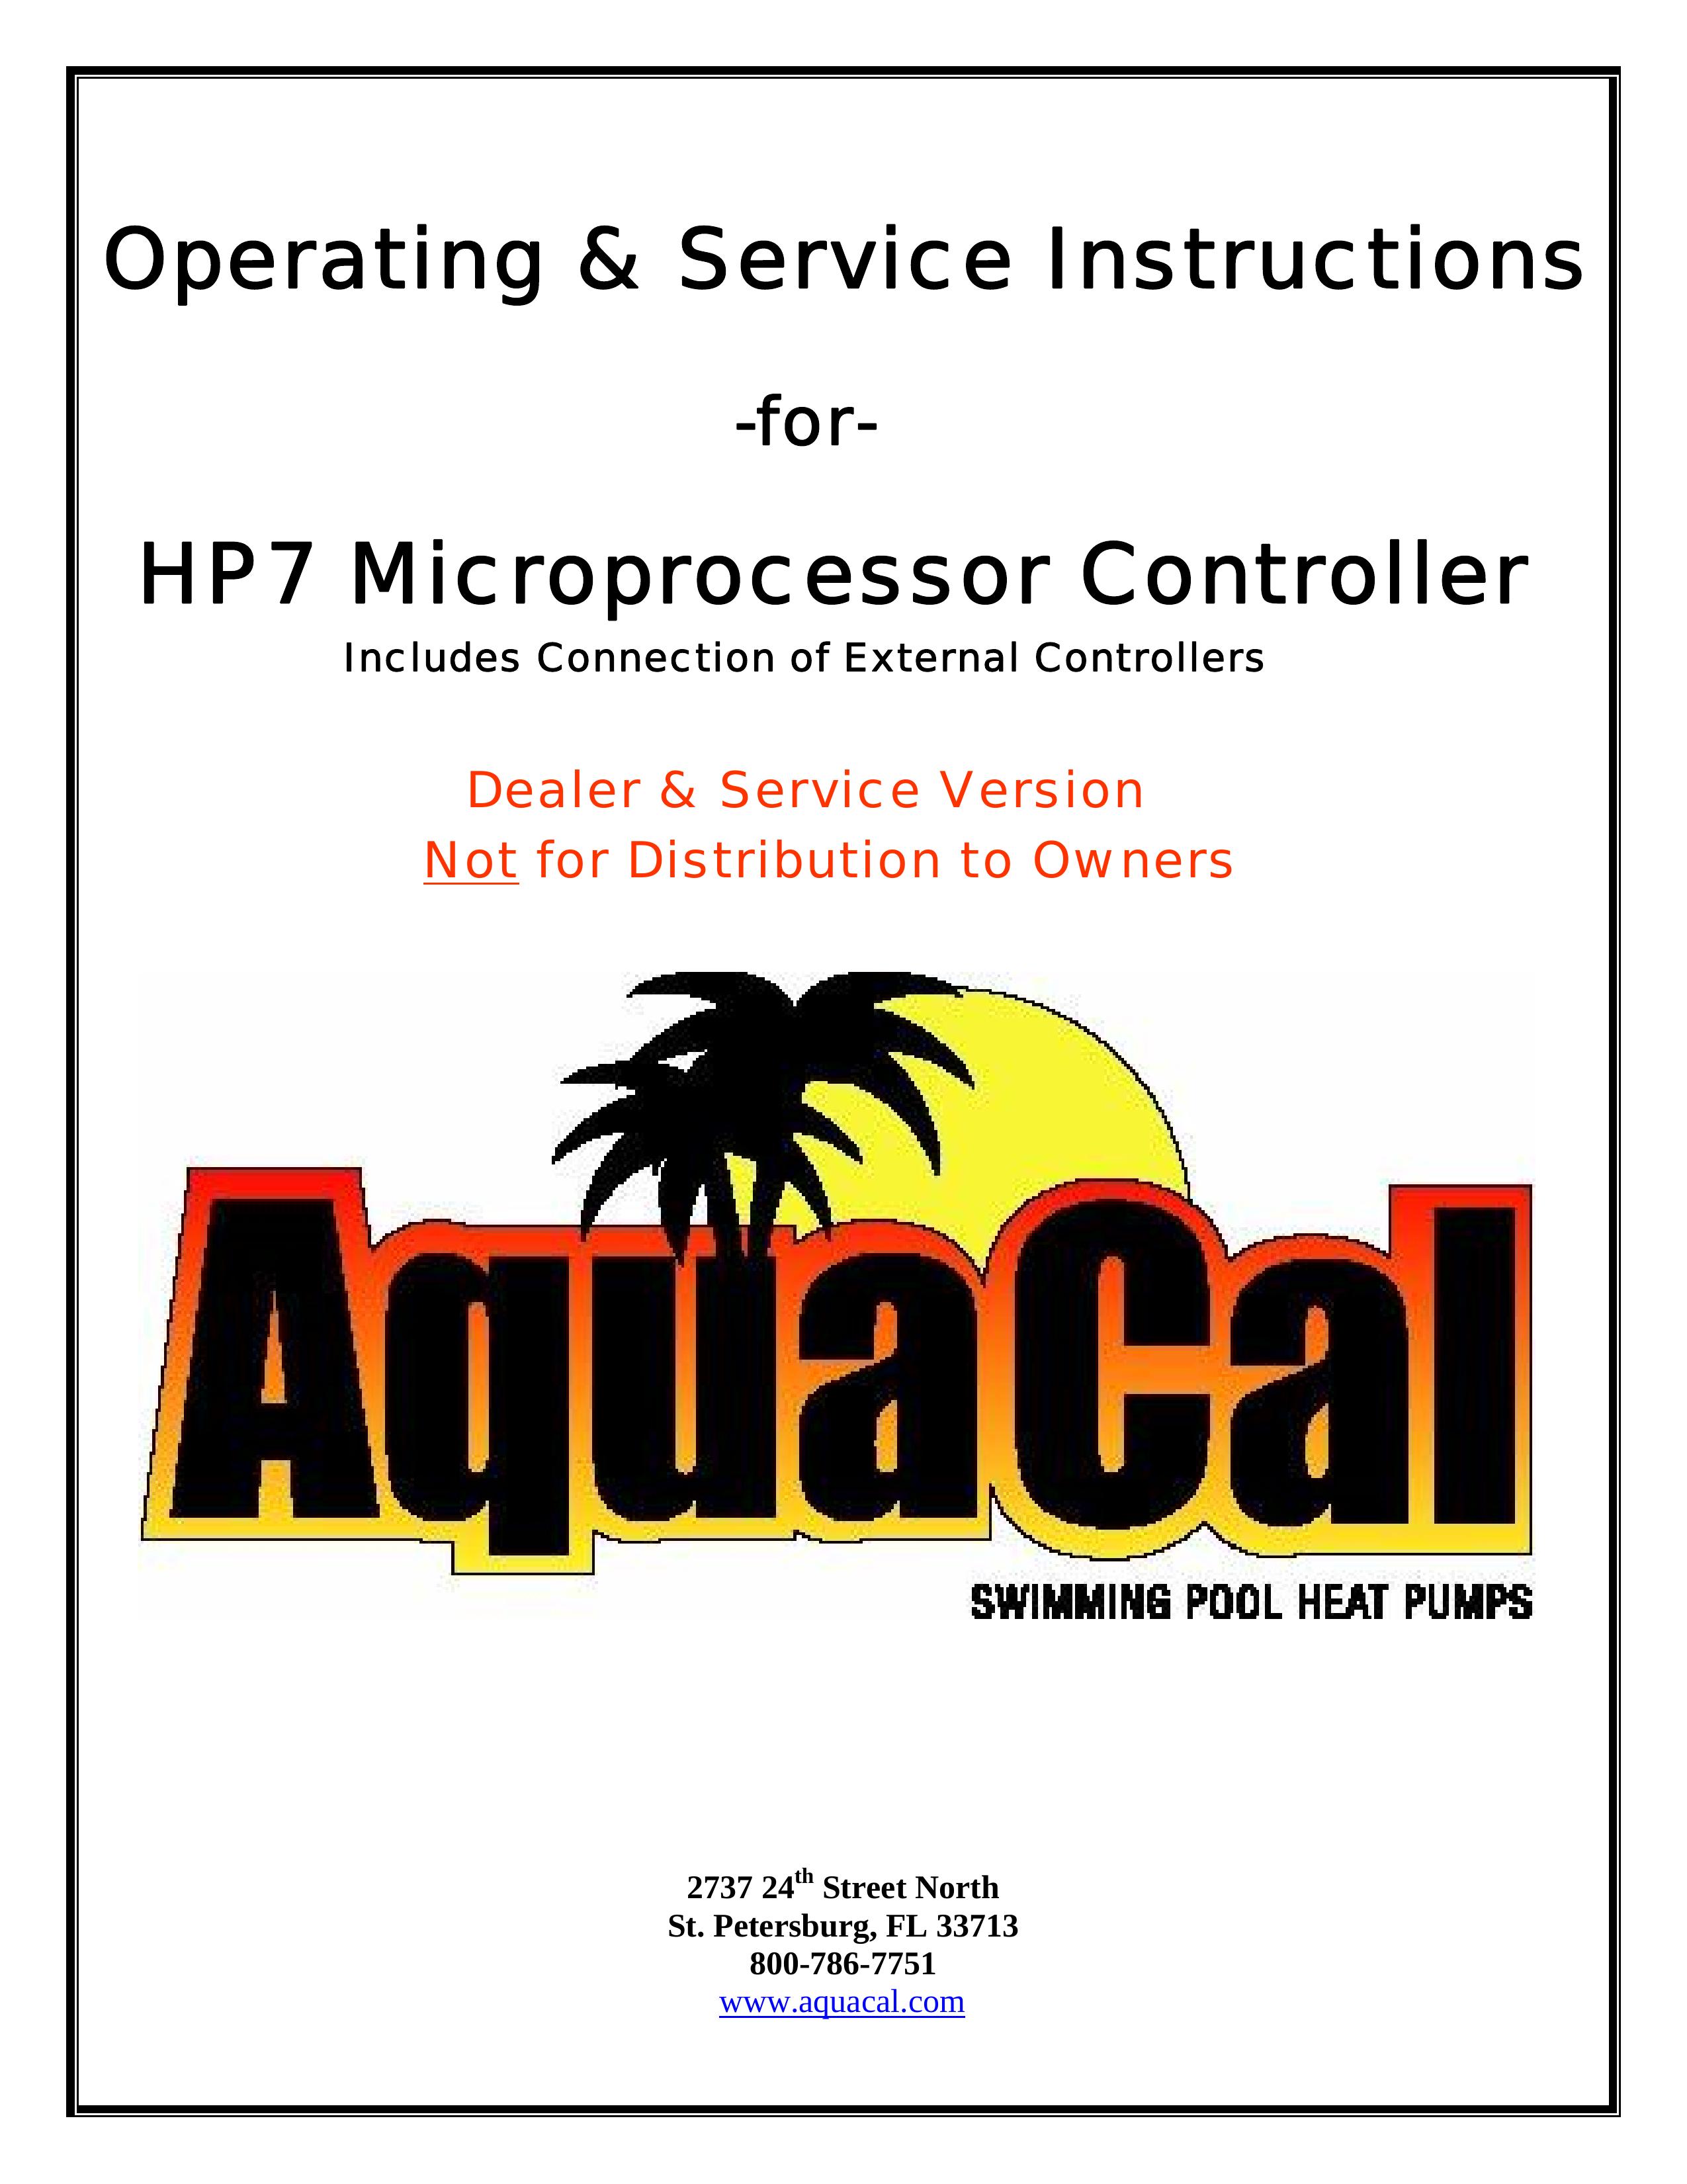 Aquacal HP7 Swimming Pool Heater User Manual